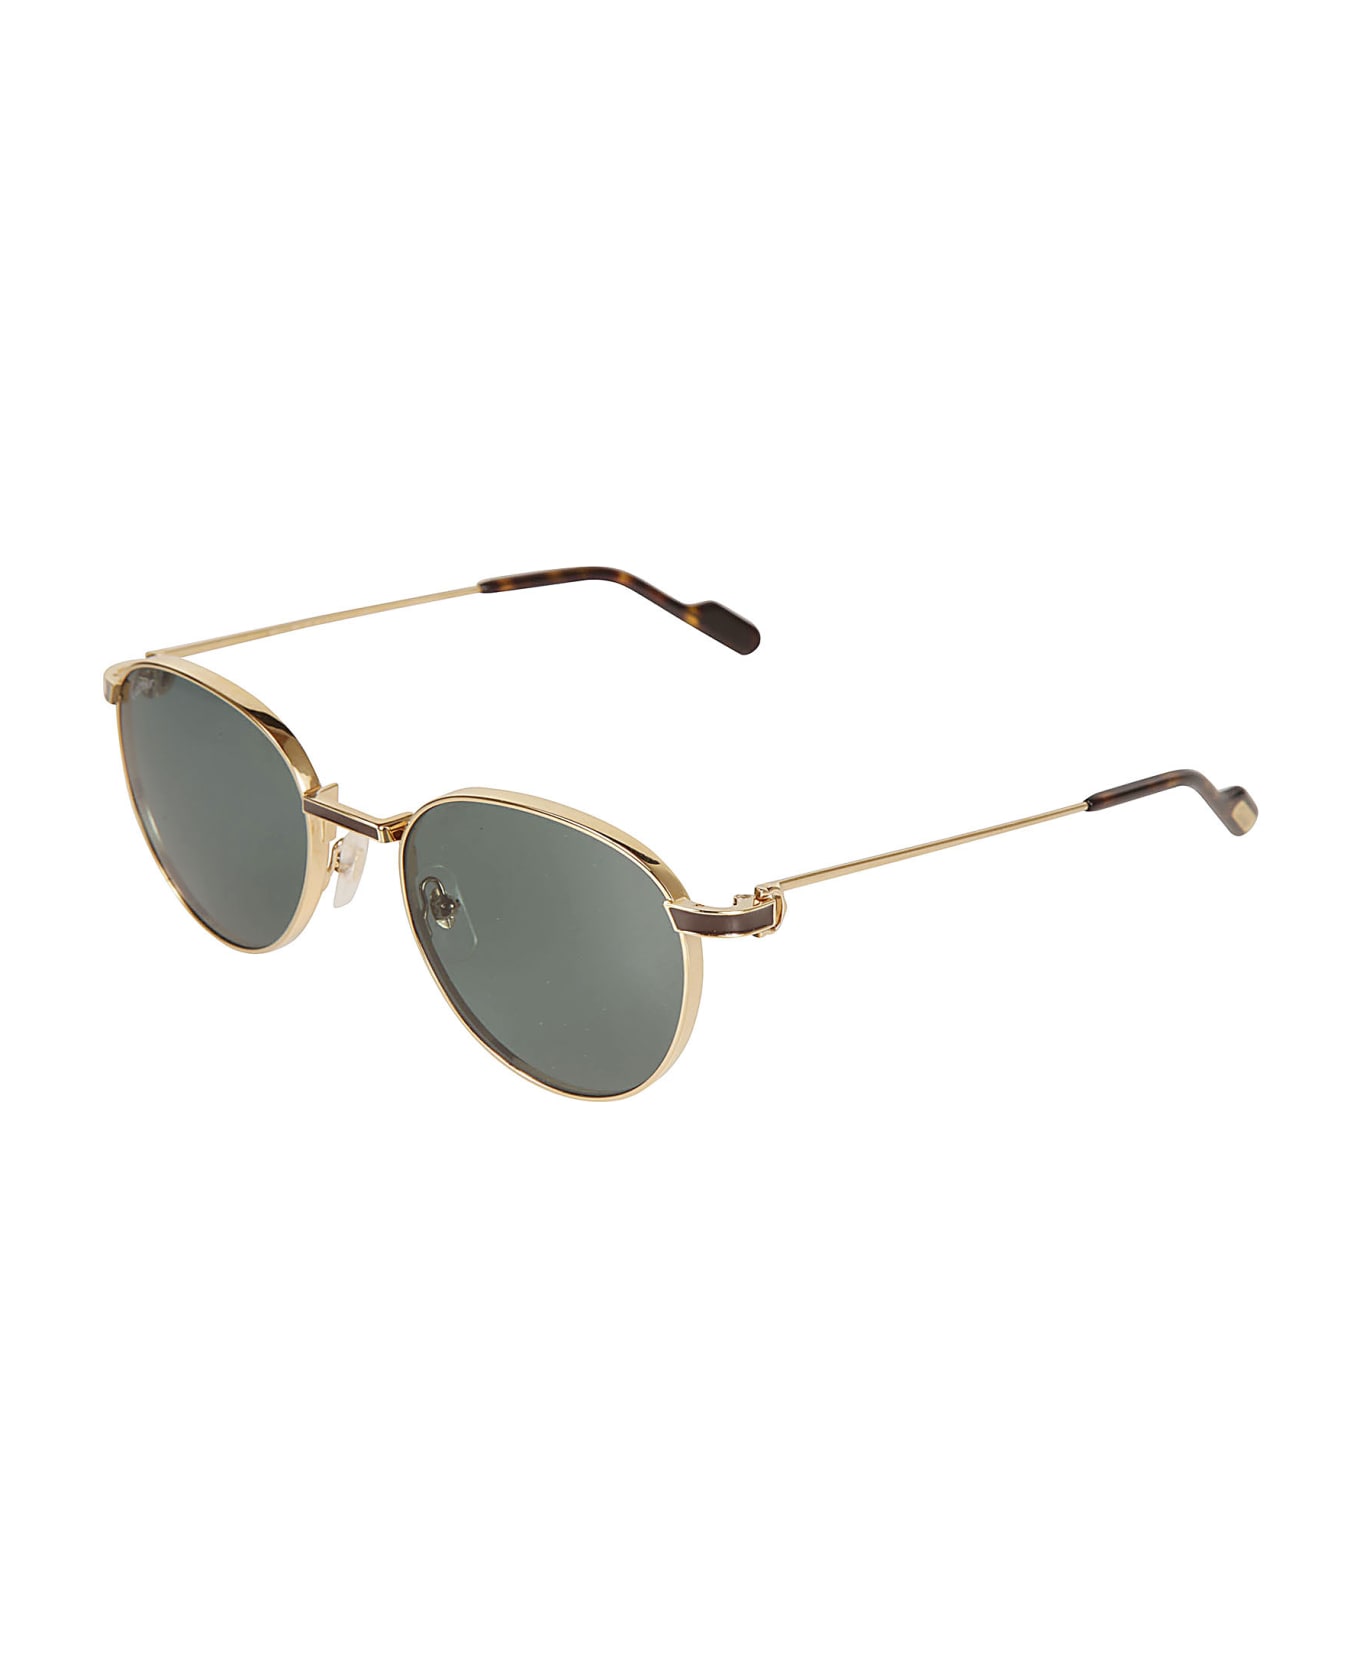 Cartier Eyewear Logo Round Sunglasses - 002 gold gold green